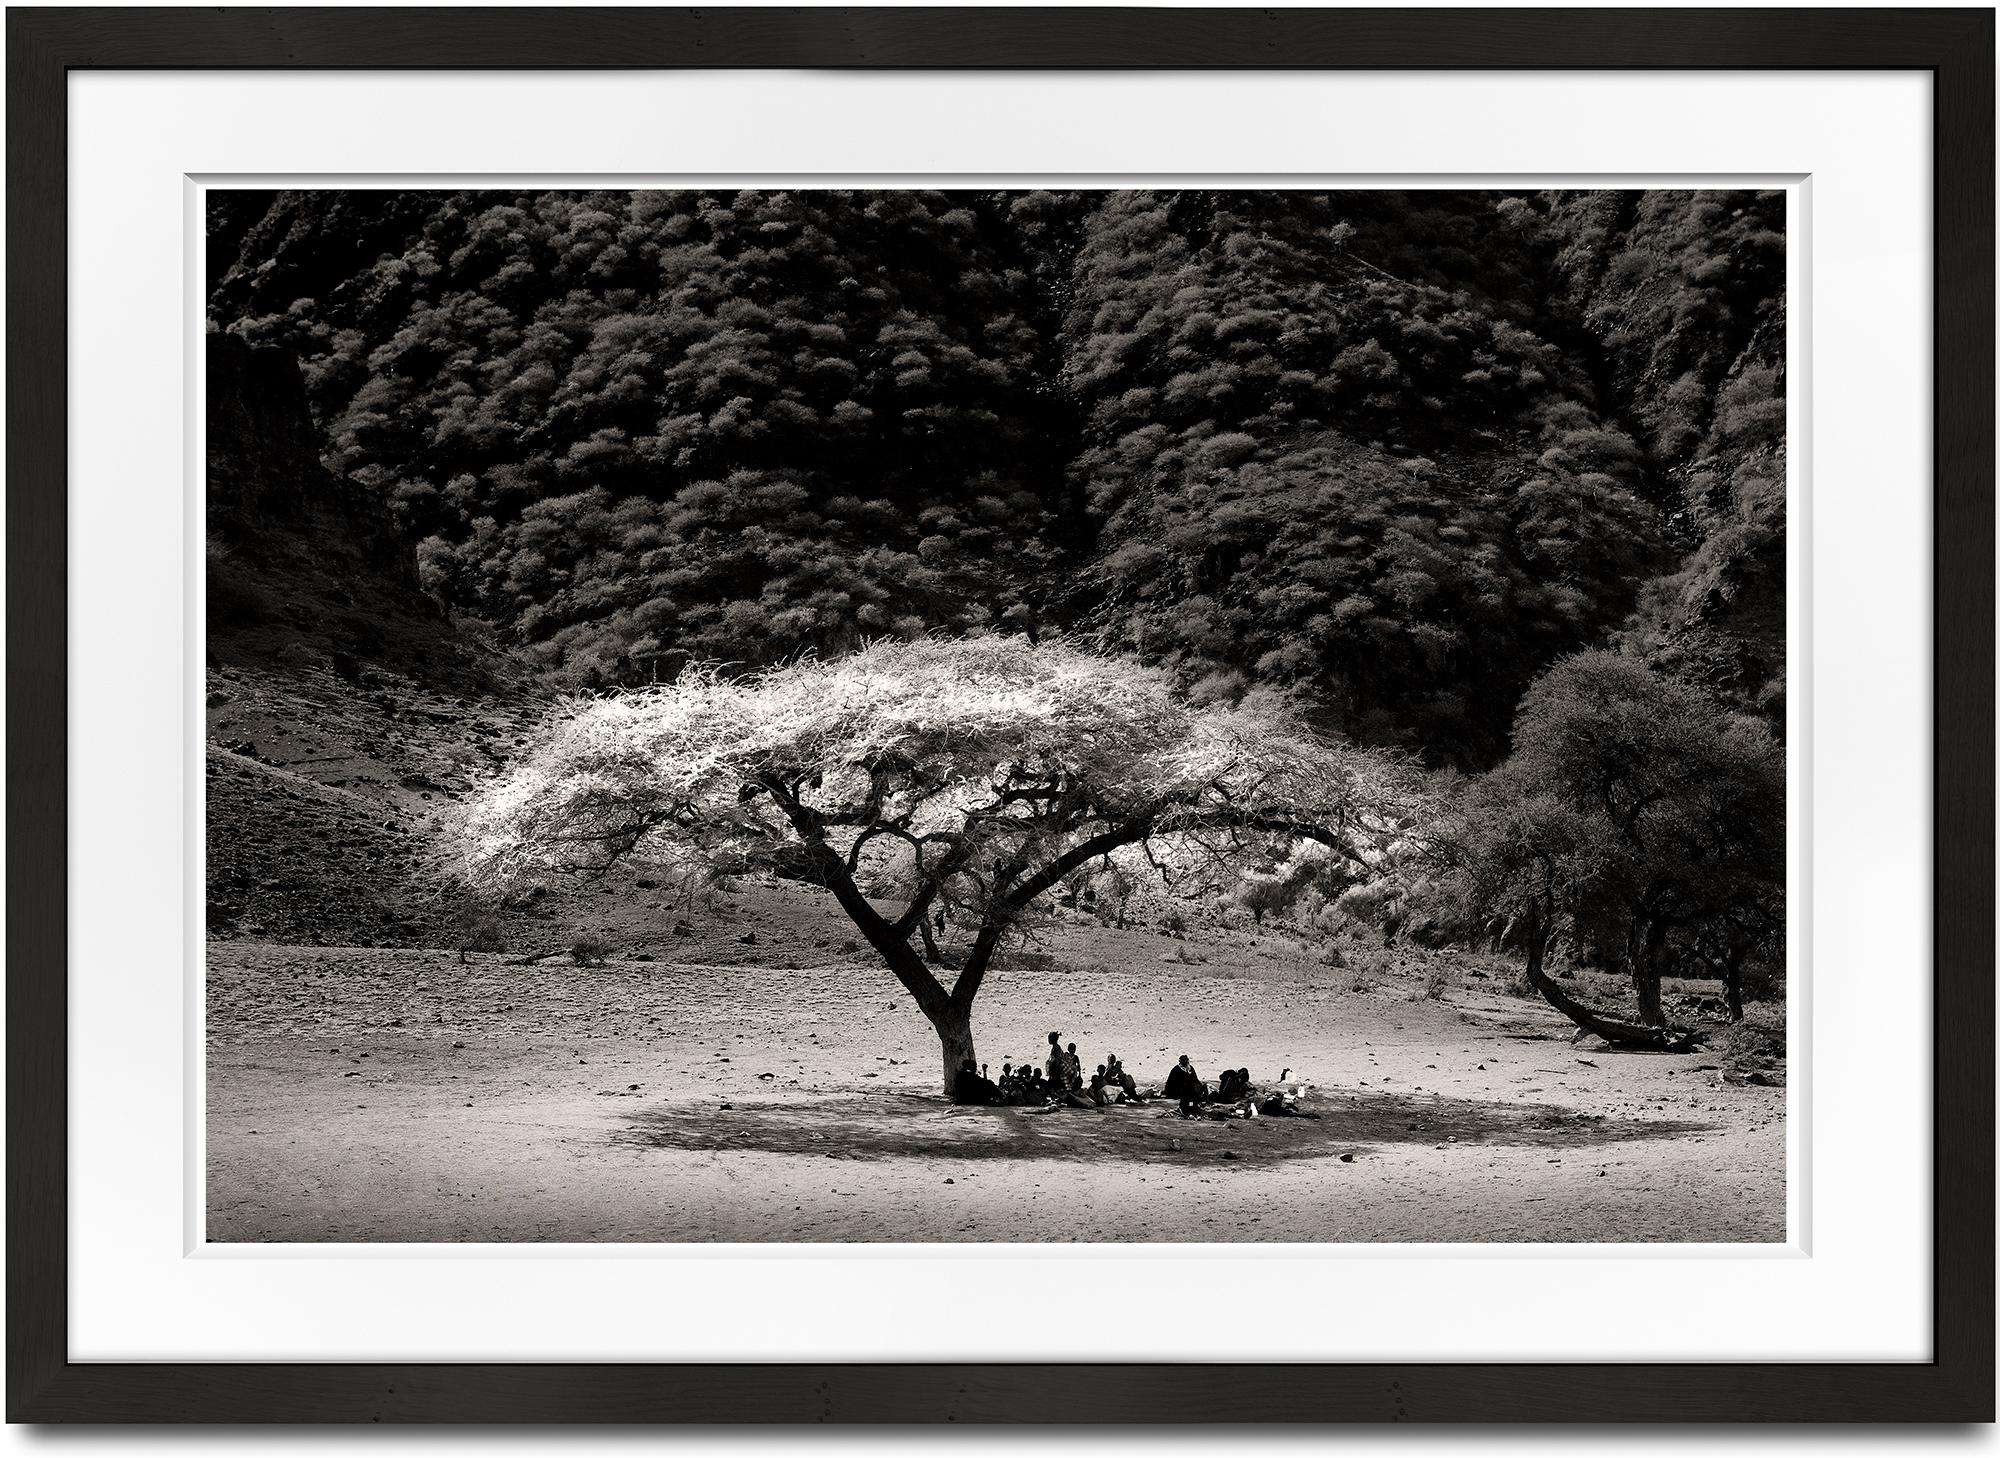 Midday in Rift Valley, Afrique, personnes, photographies en noir et blanc, famille - Photograph de Joachim Schmeisser